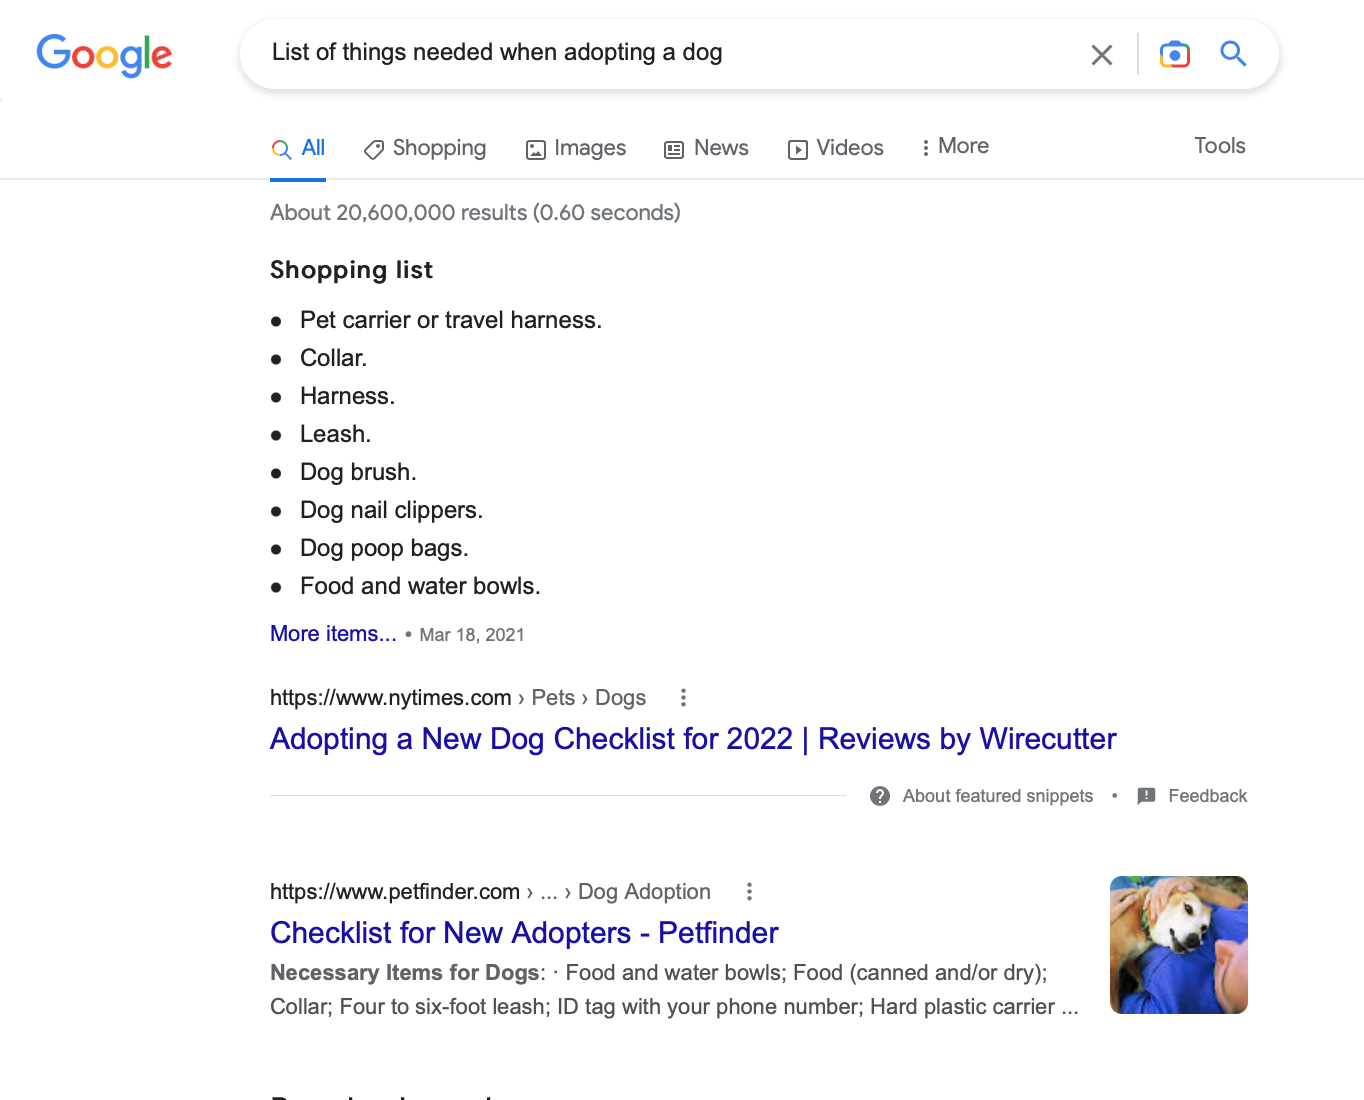 لقطة شاشة لطلب البحث "قائمة الأشياء المطلوبة عند تبني كلب" على Google